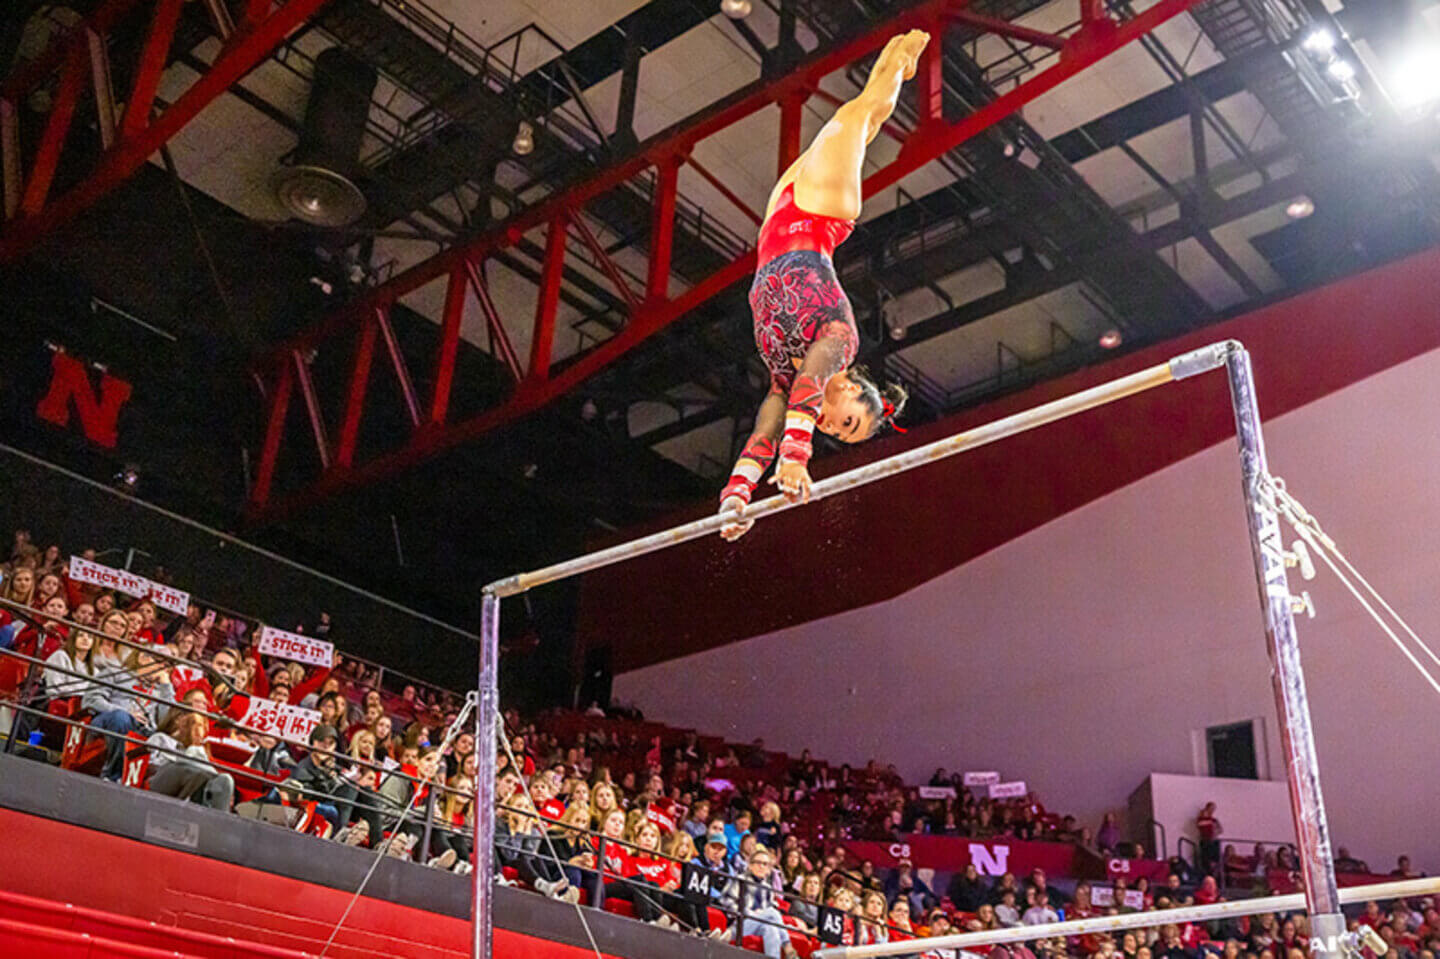 A Husker gymnast doing a handstand on a high bar.